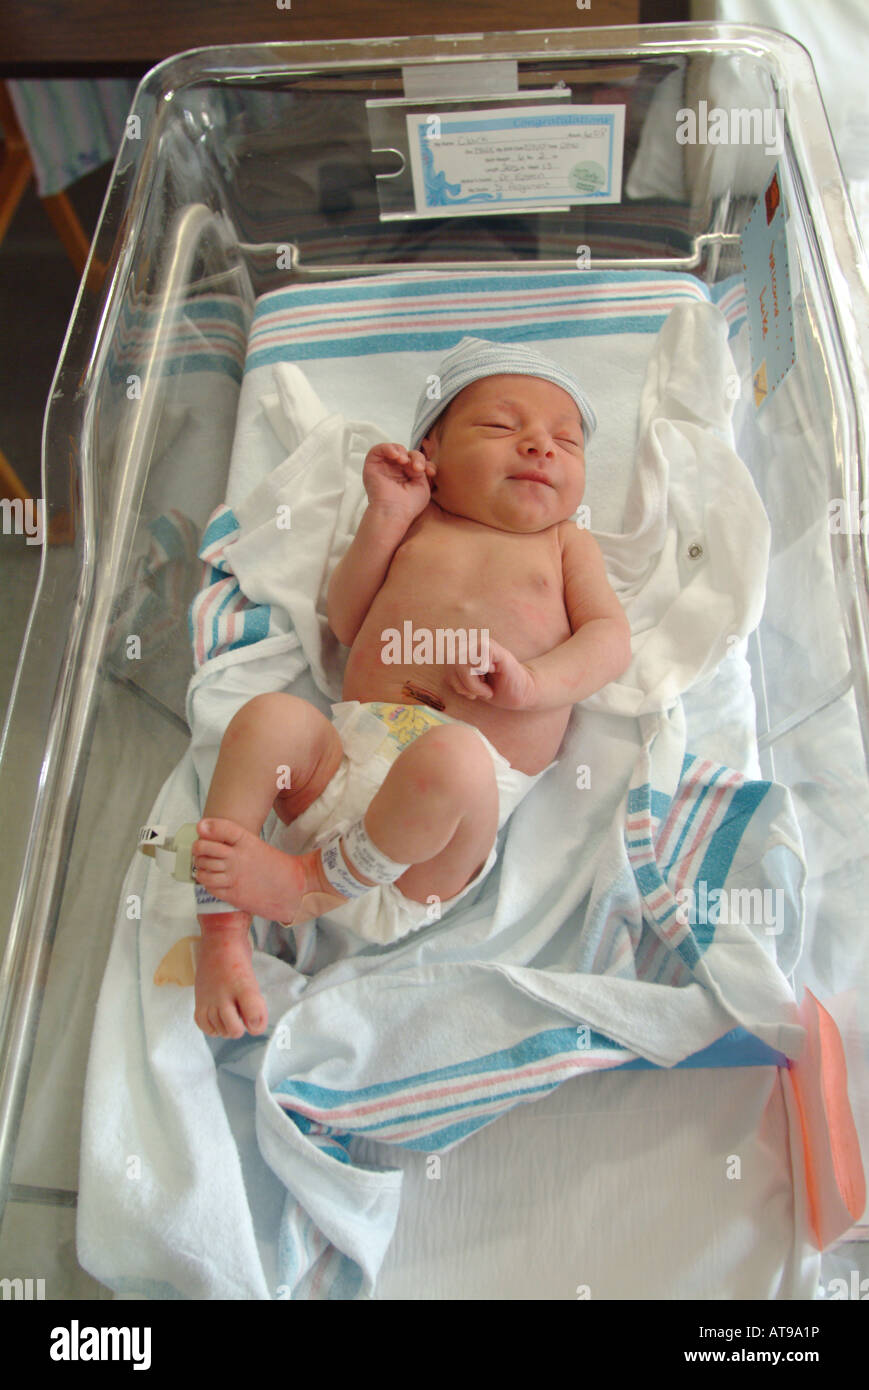 Bébé nouveau-né à l'hôpital Massachusetts (MA) Etats-Unis d'Amérique (USA) Banque D'Images